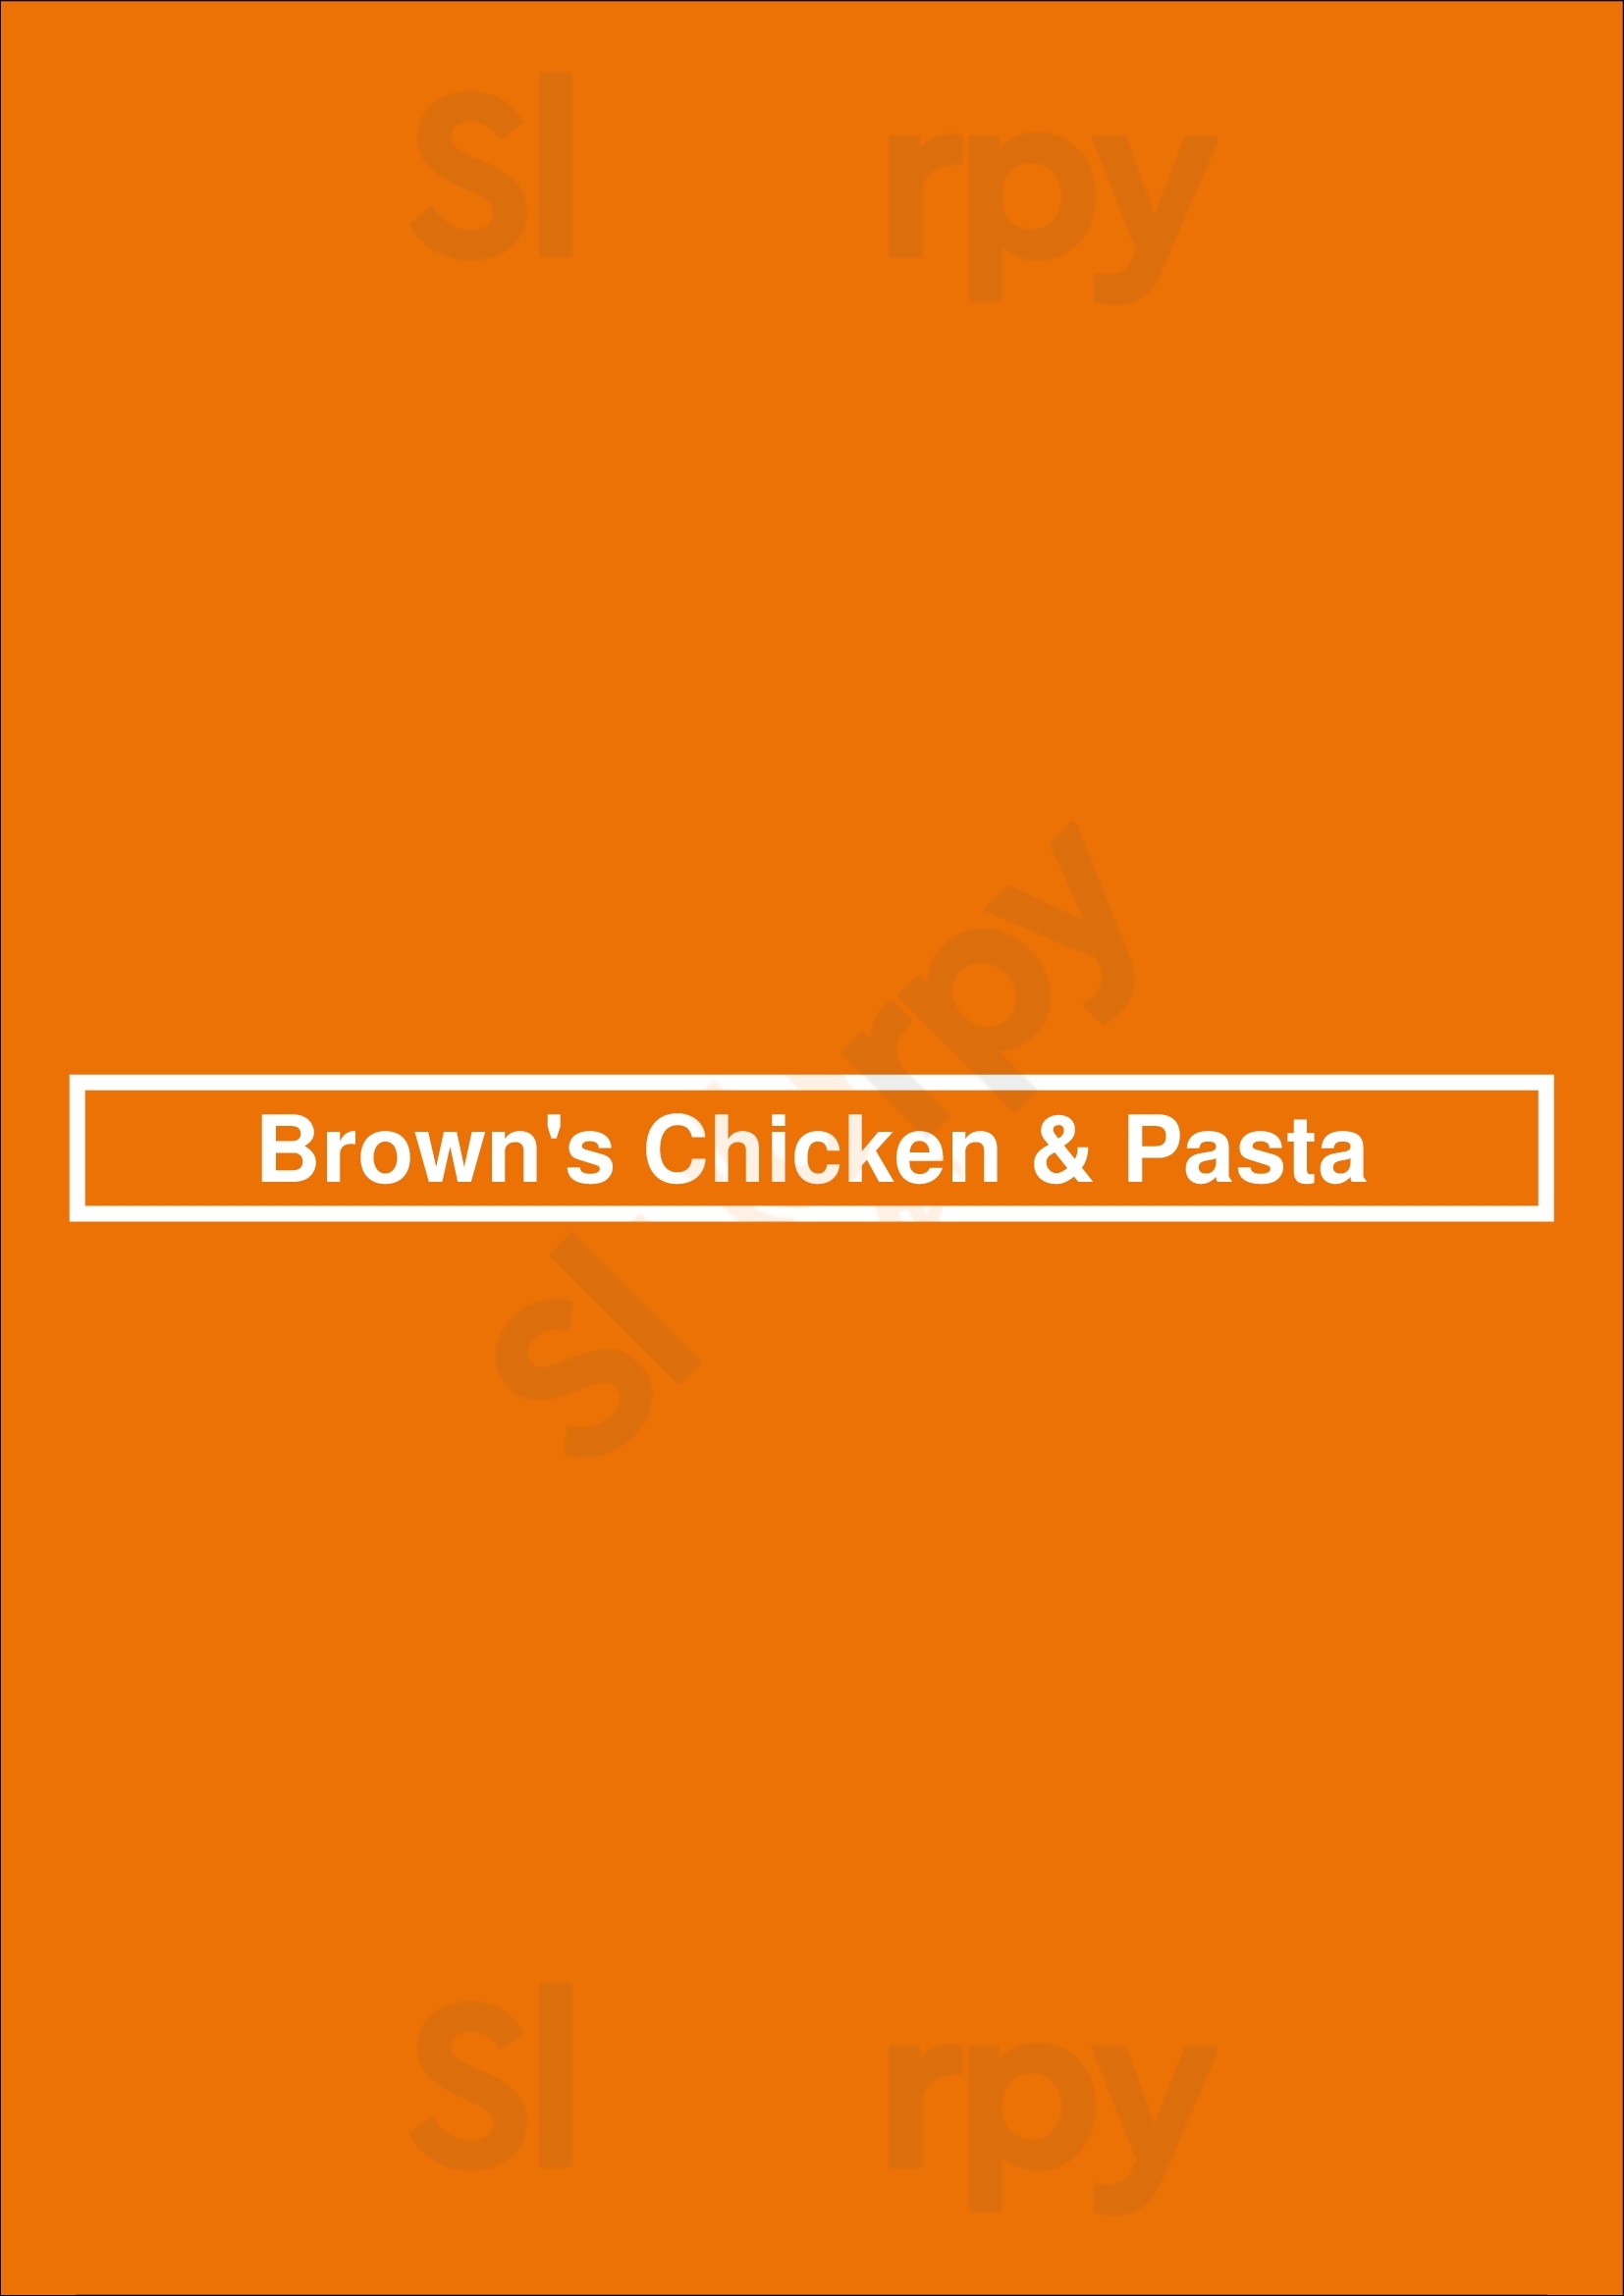 Brown's Chicken & Pasta Aurora Menu - 1